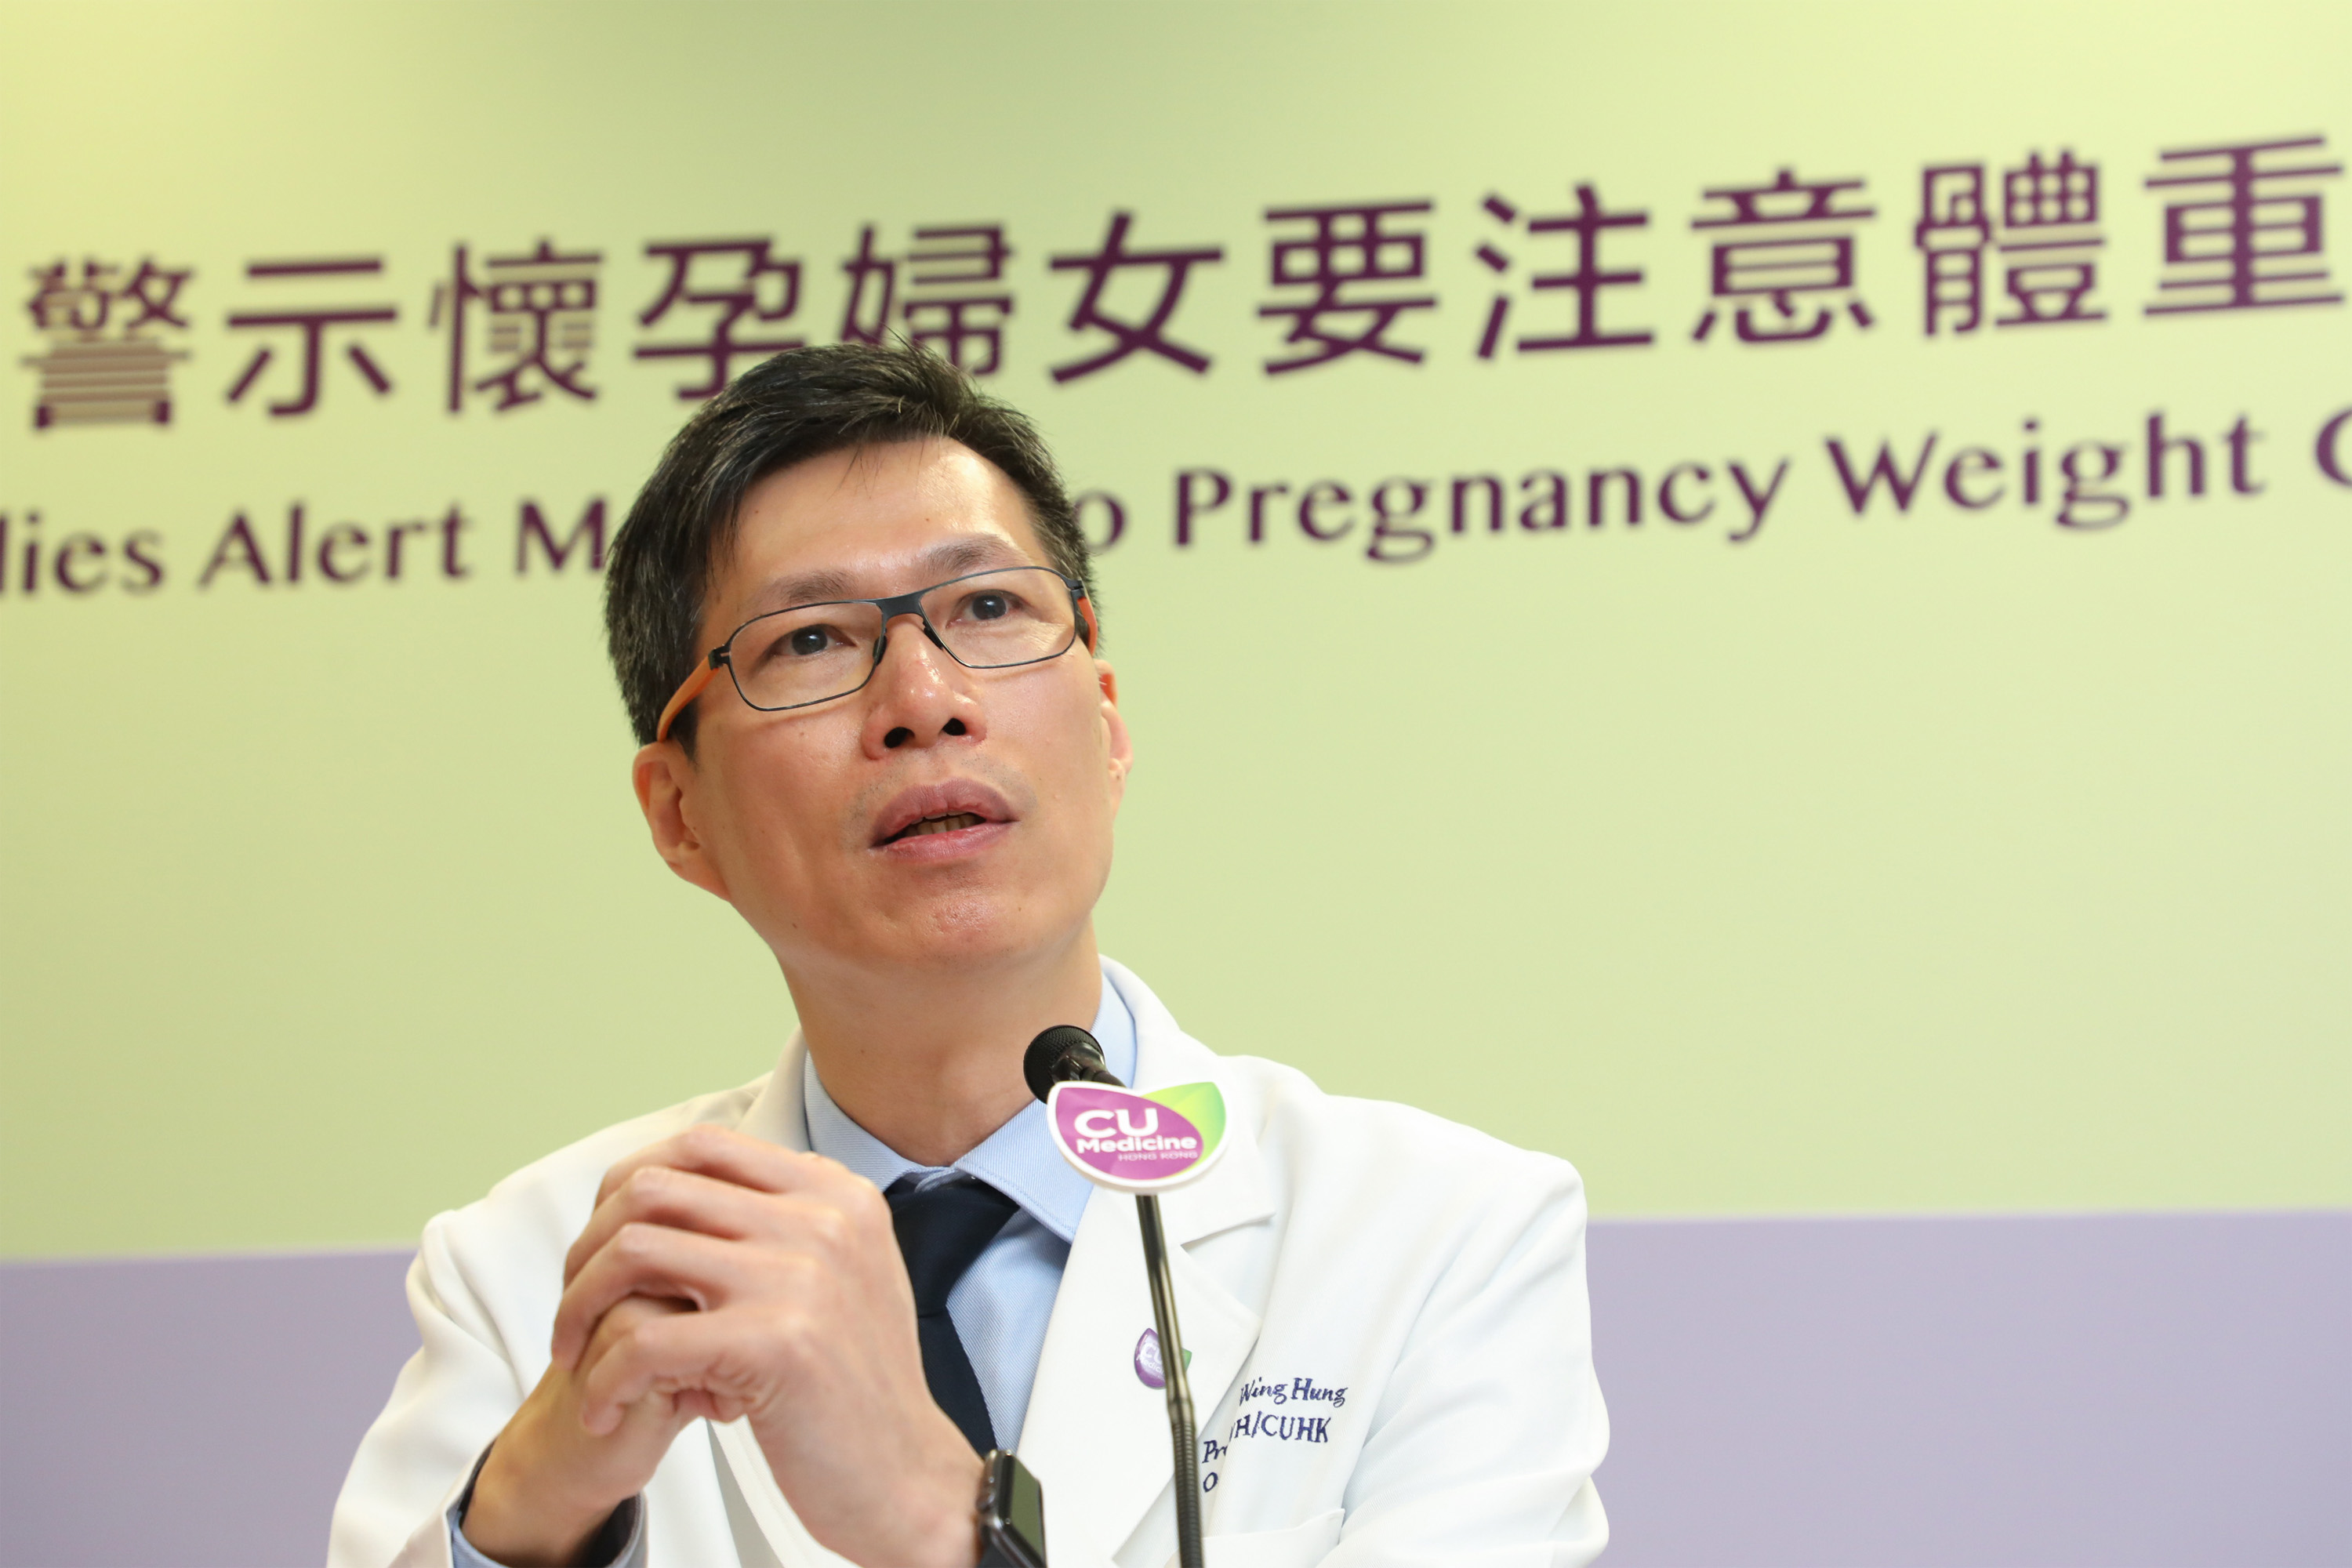 譚教授表示團隊將繼續研究「懷孕期體重增幅」和「妊娠糖尿病」對下一代於不同成長階段的影響。